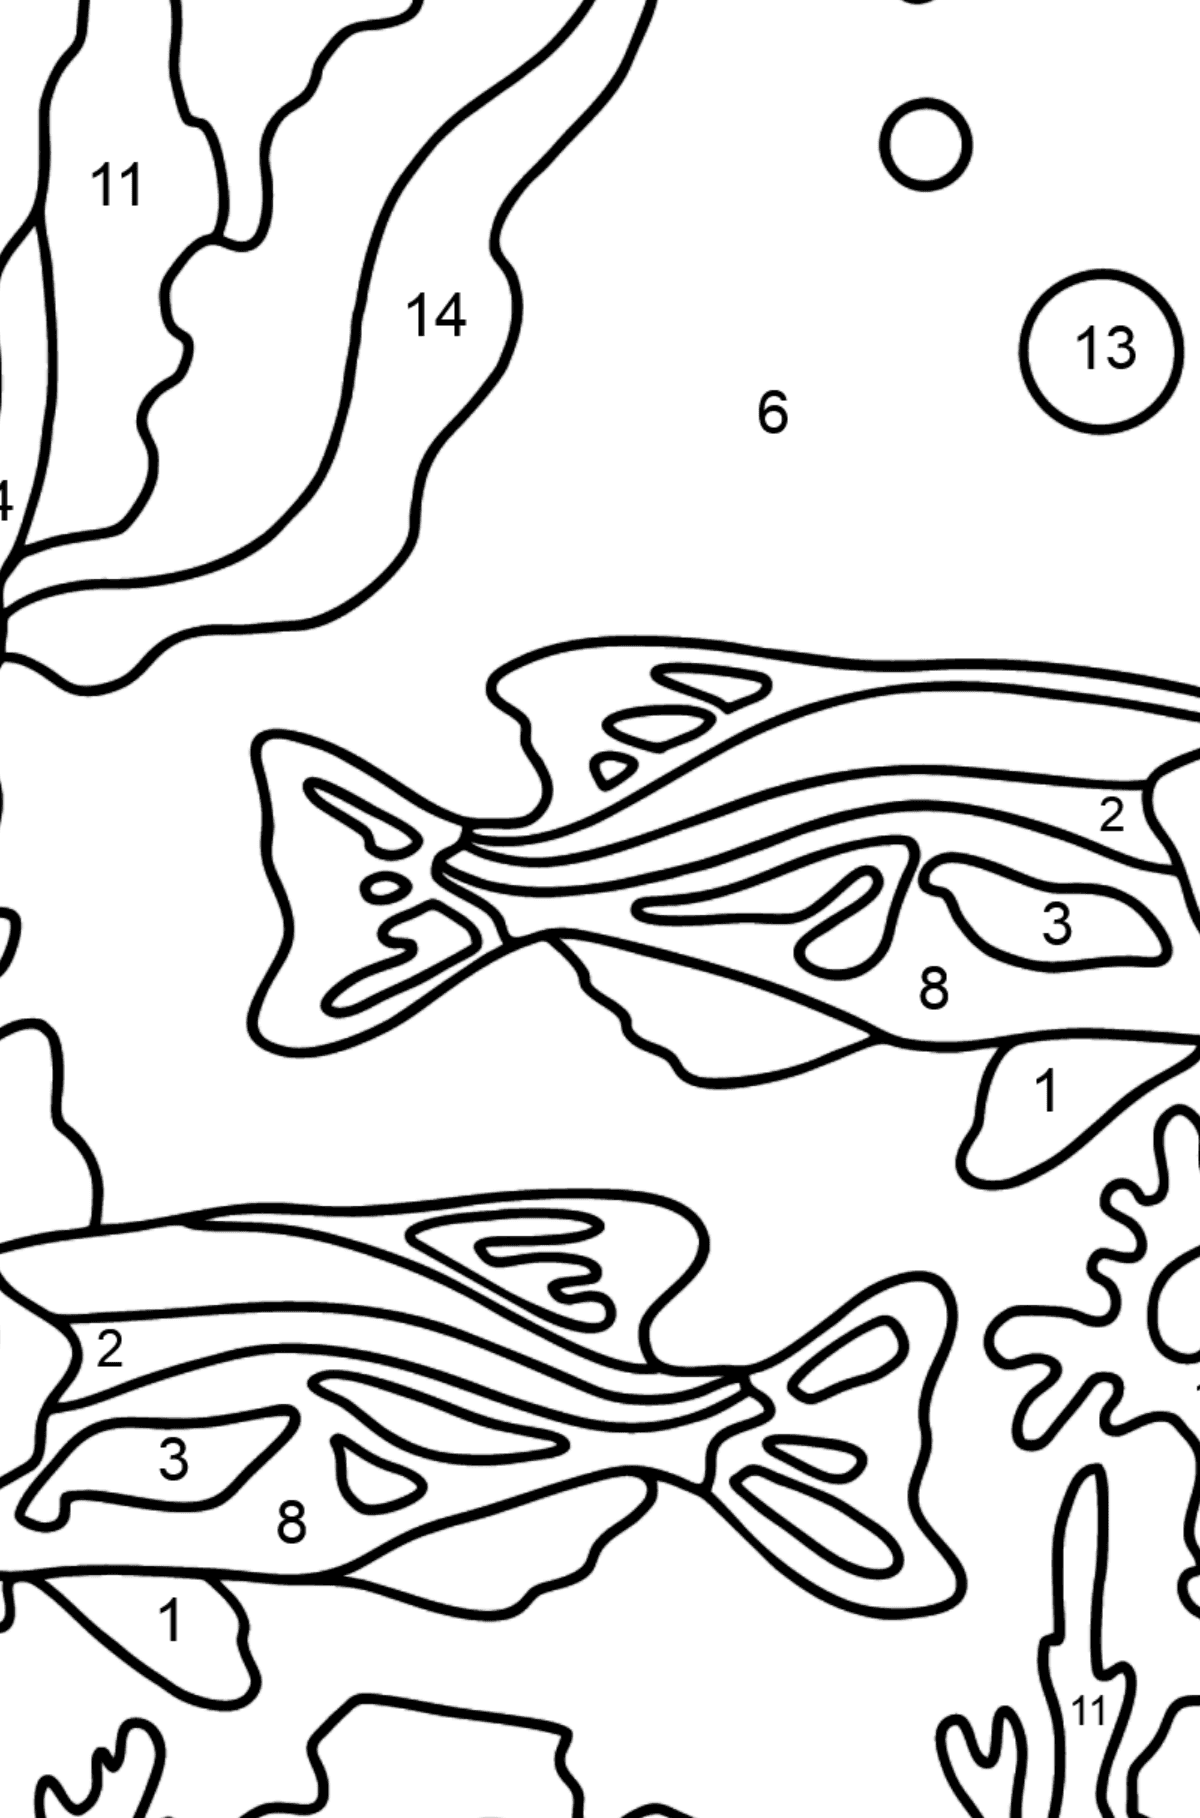 Dibujo para Colorear - Los Peces están Nadando Juntos Pacíficamente - Colorear por Números para Niños